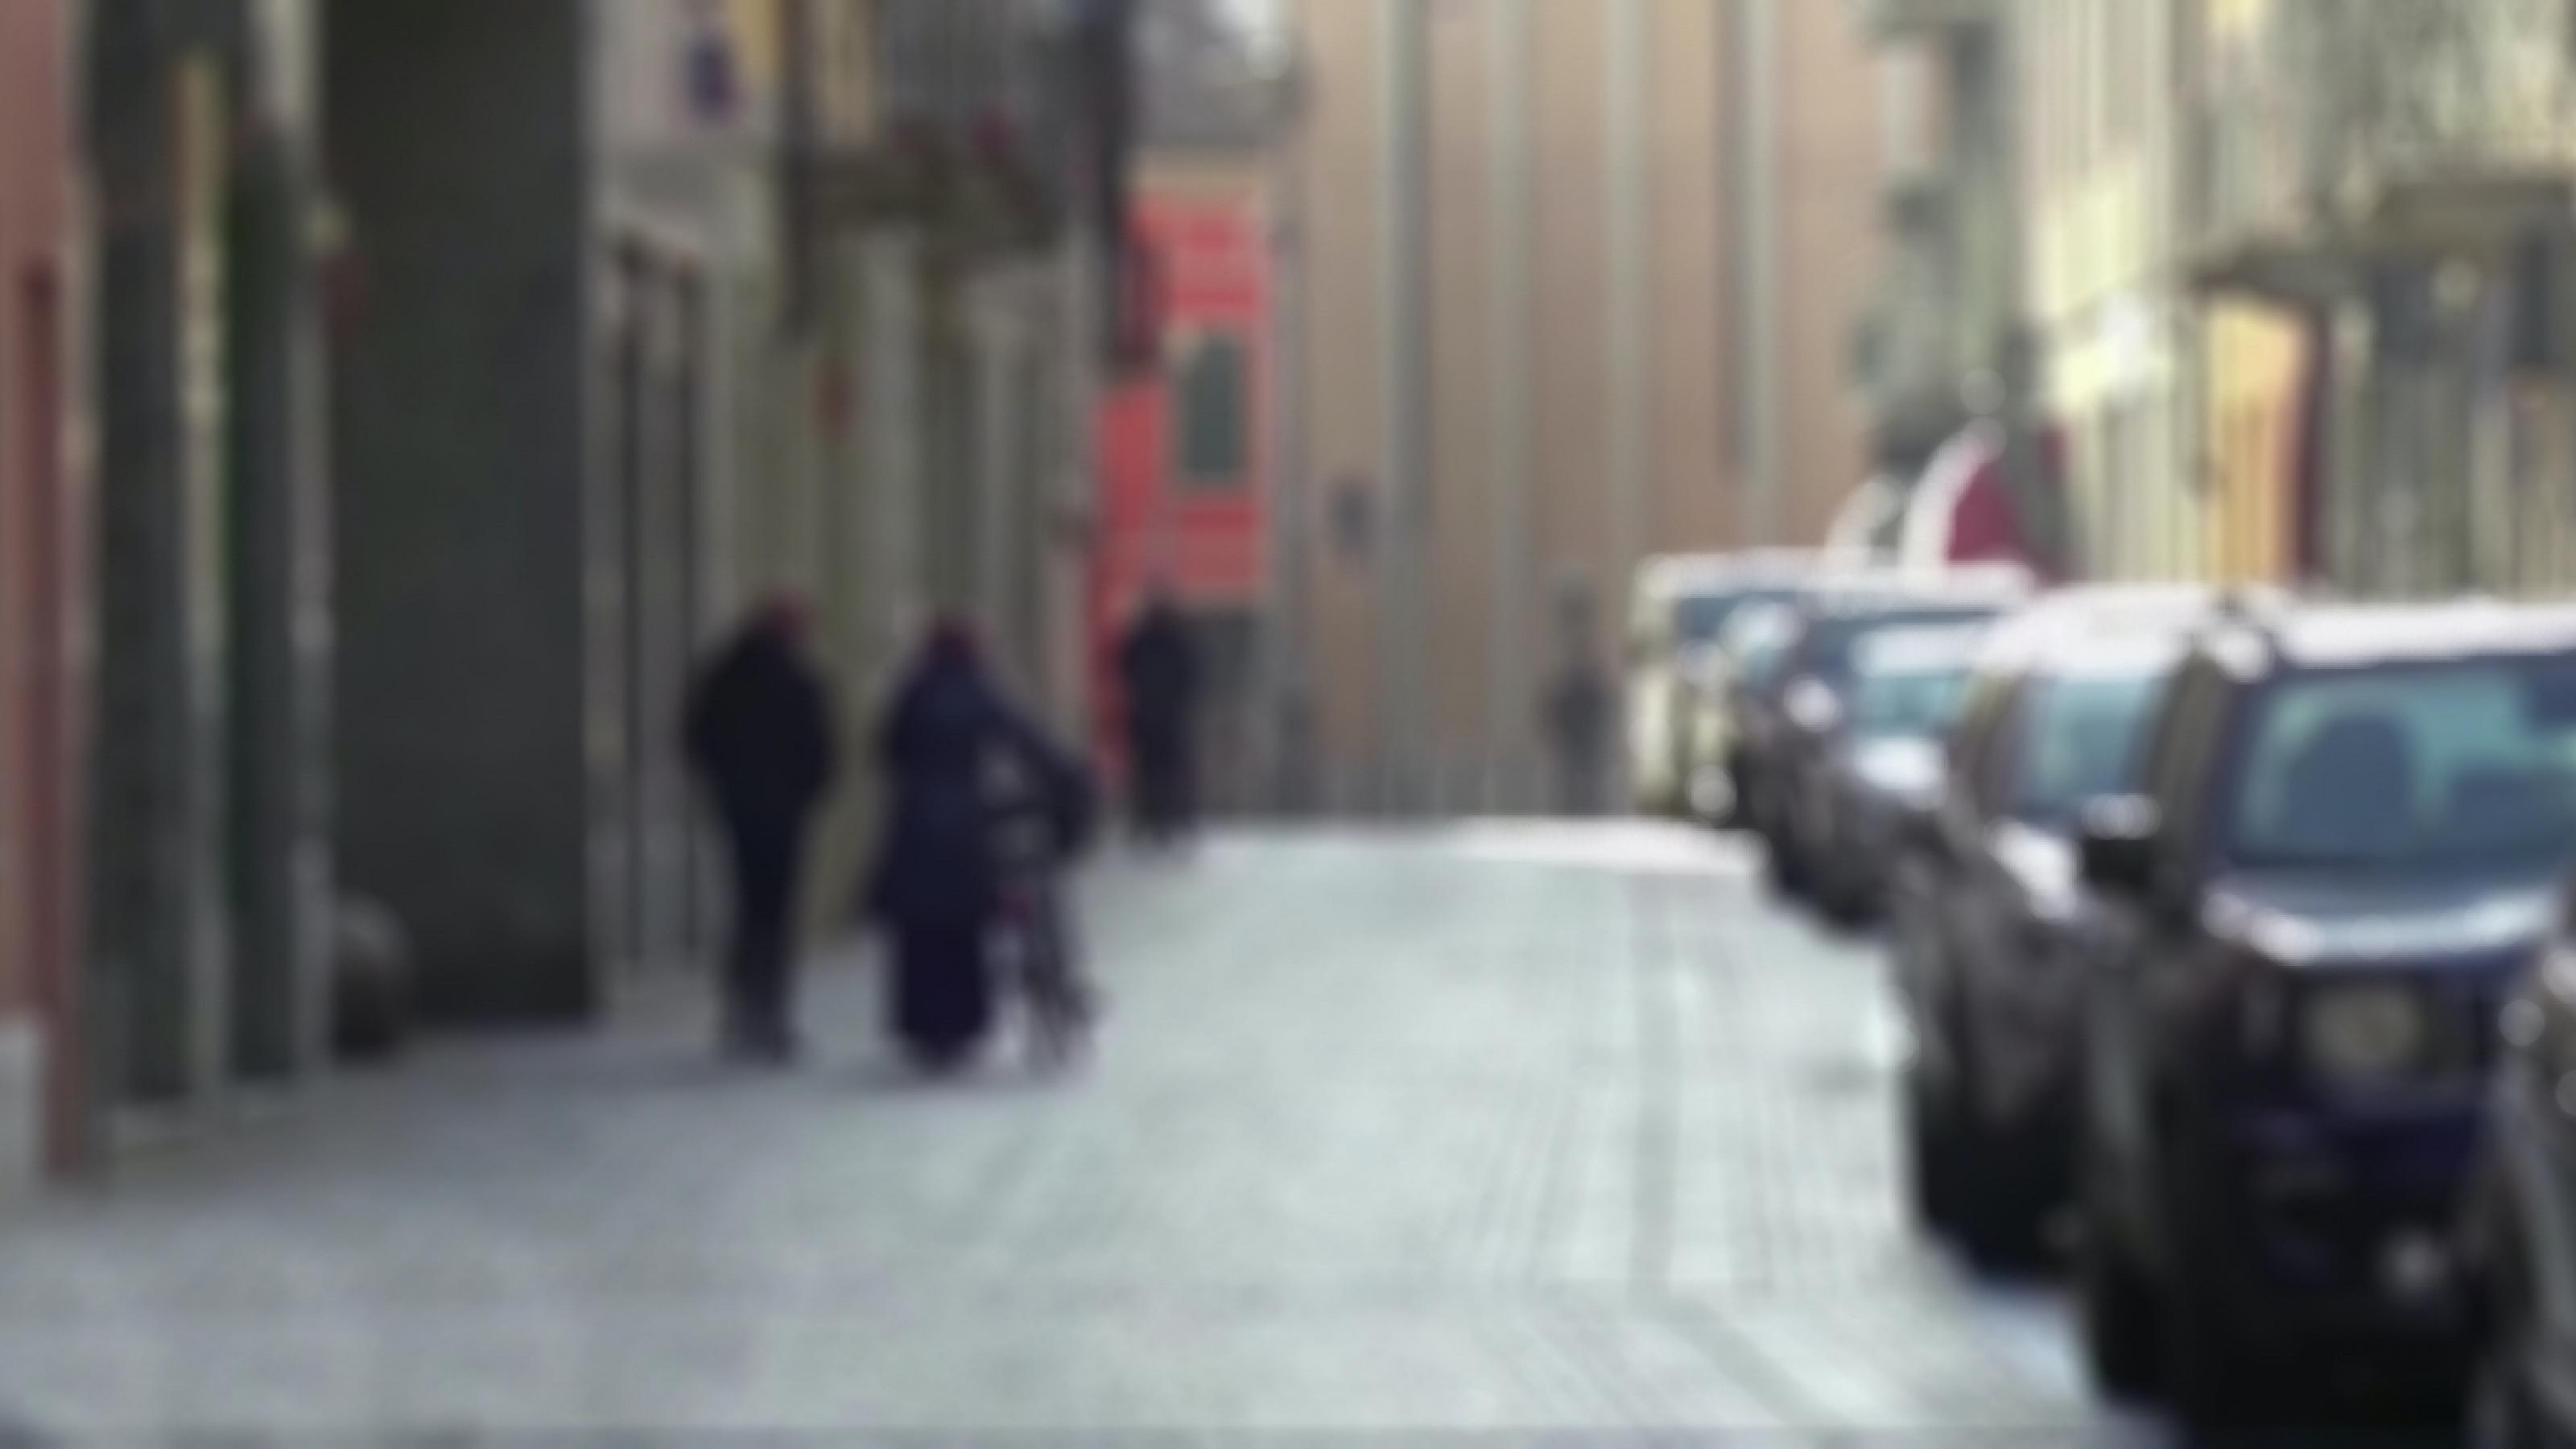 Das Bild ist unscharf und zeigt eine Straße in der links zwei Fußgänger laufen, einer von ihnen schiebt sein Fahrrad, rechts parken Autos